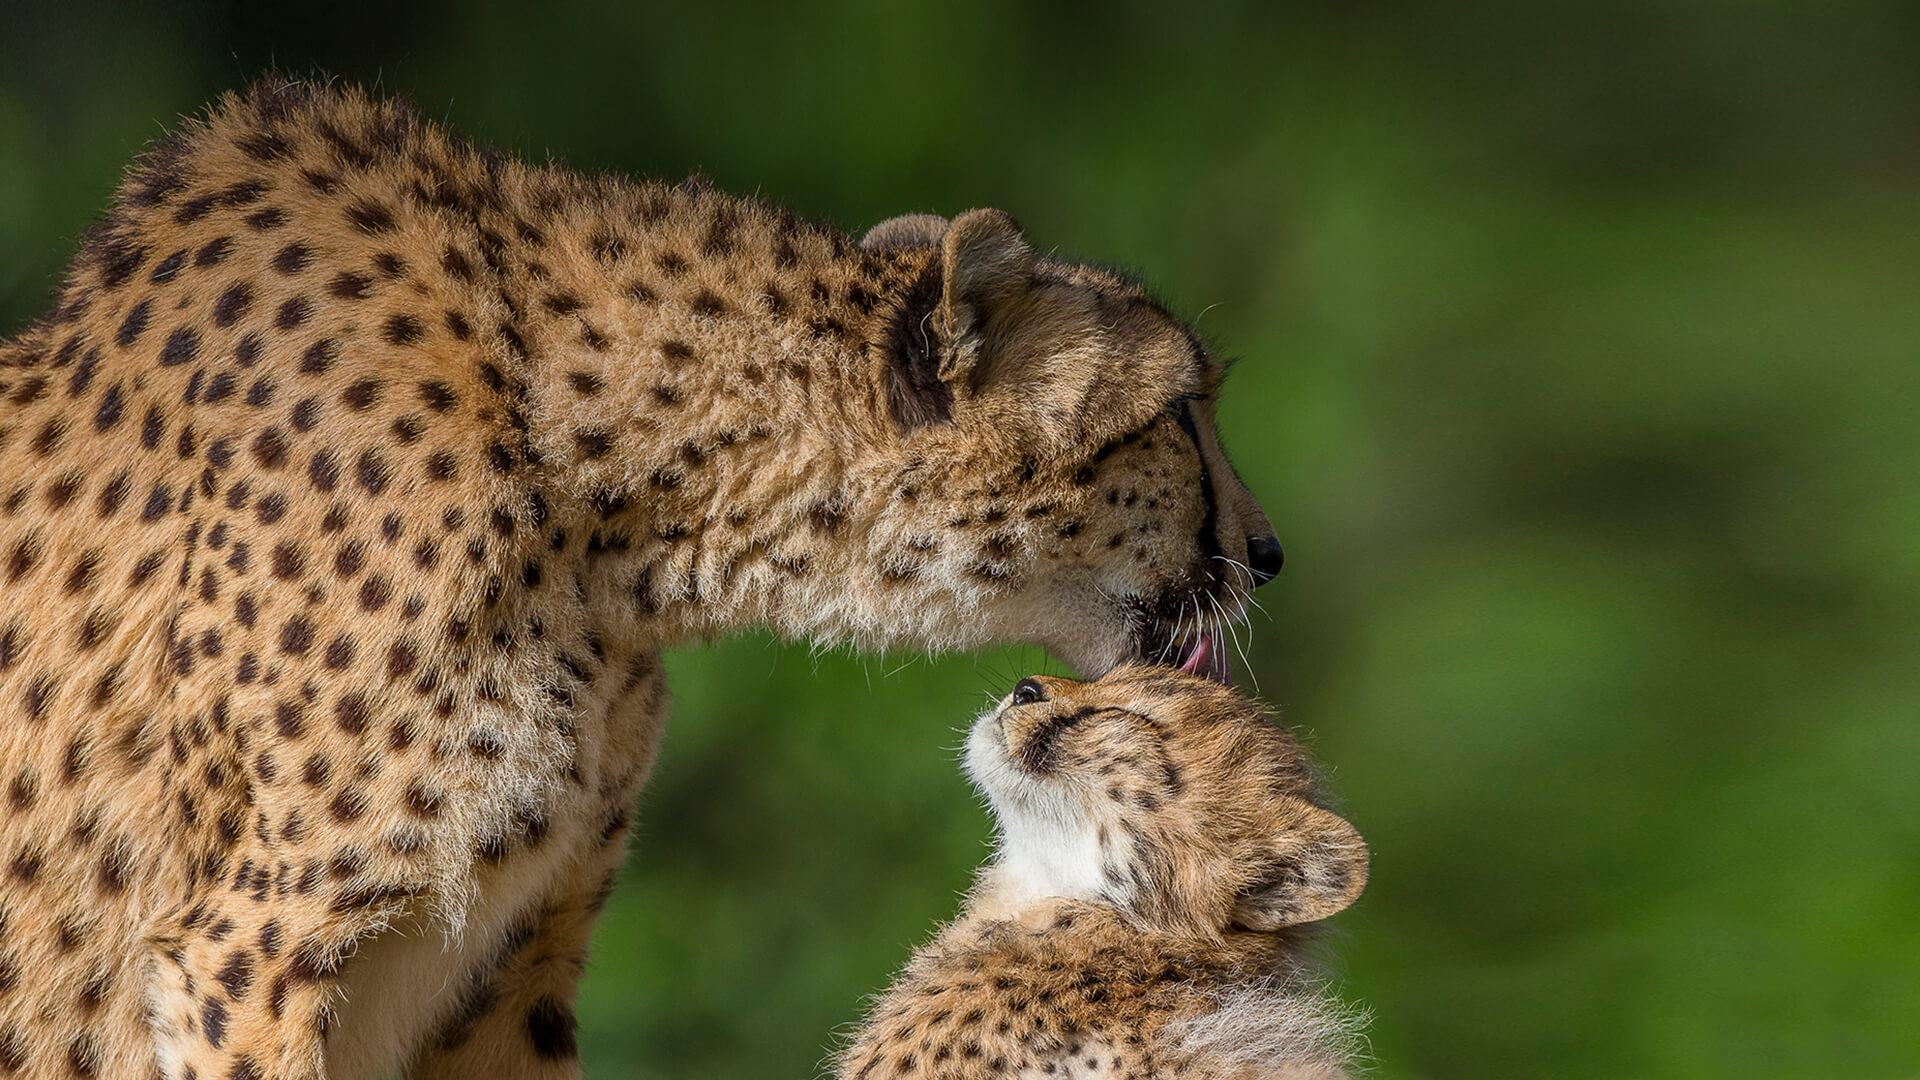 Young cheetah photo